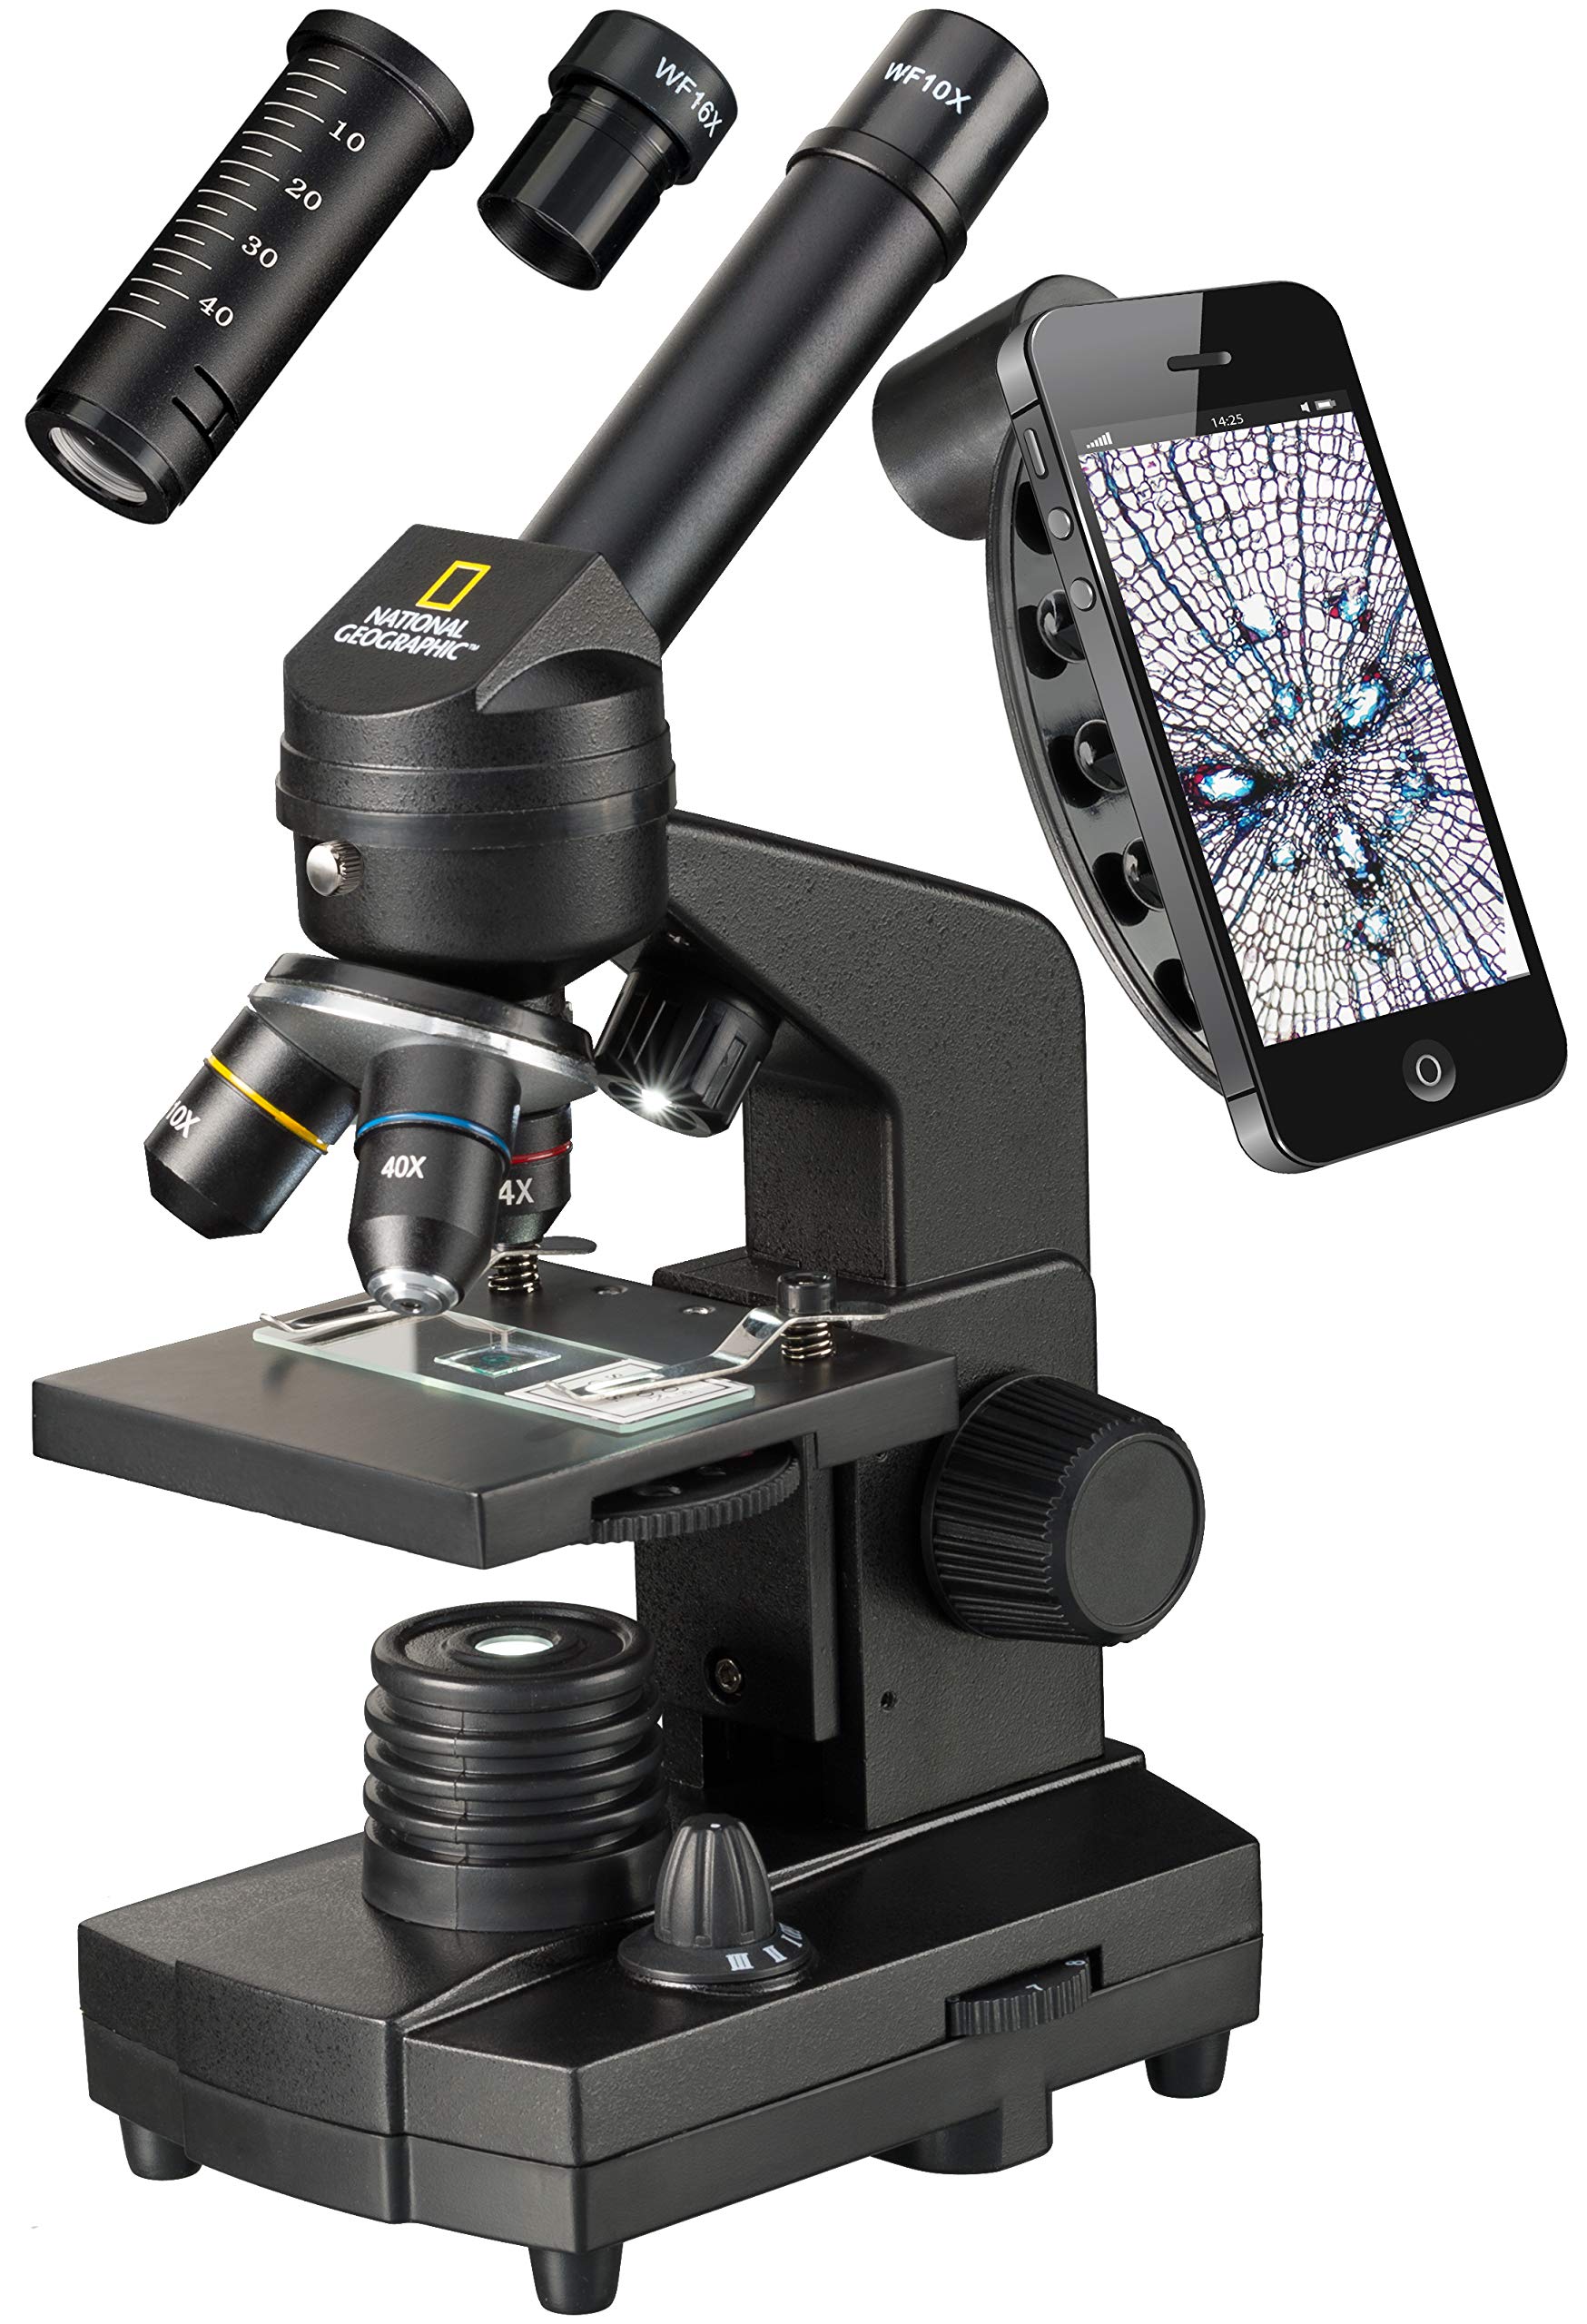 National Geographic 40-1280x Mikroskop mit Auflicht/Durchlichtbeleuchtung, Smartphone Halterung und umfangreichem Zubehör zum Einstieg in die Mikroskopie, schwarz